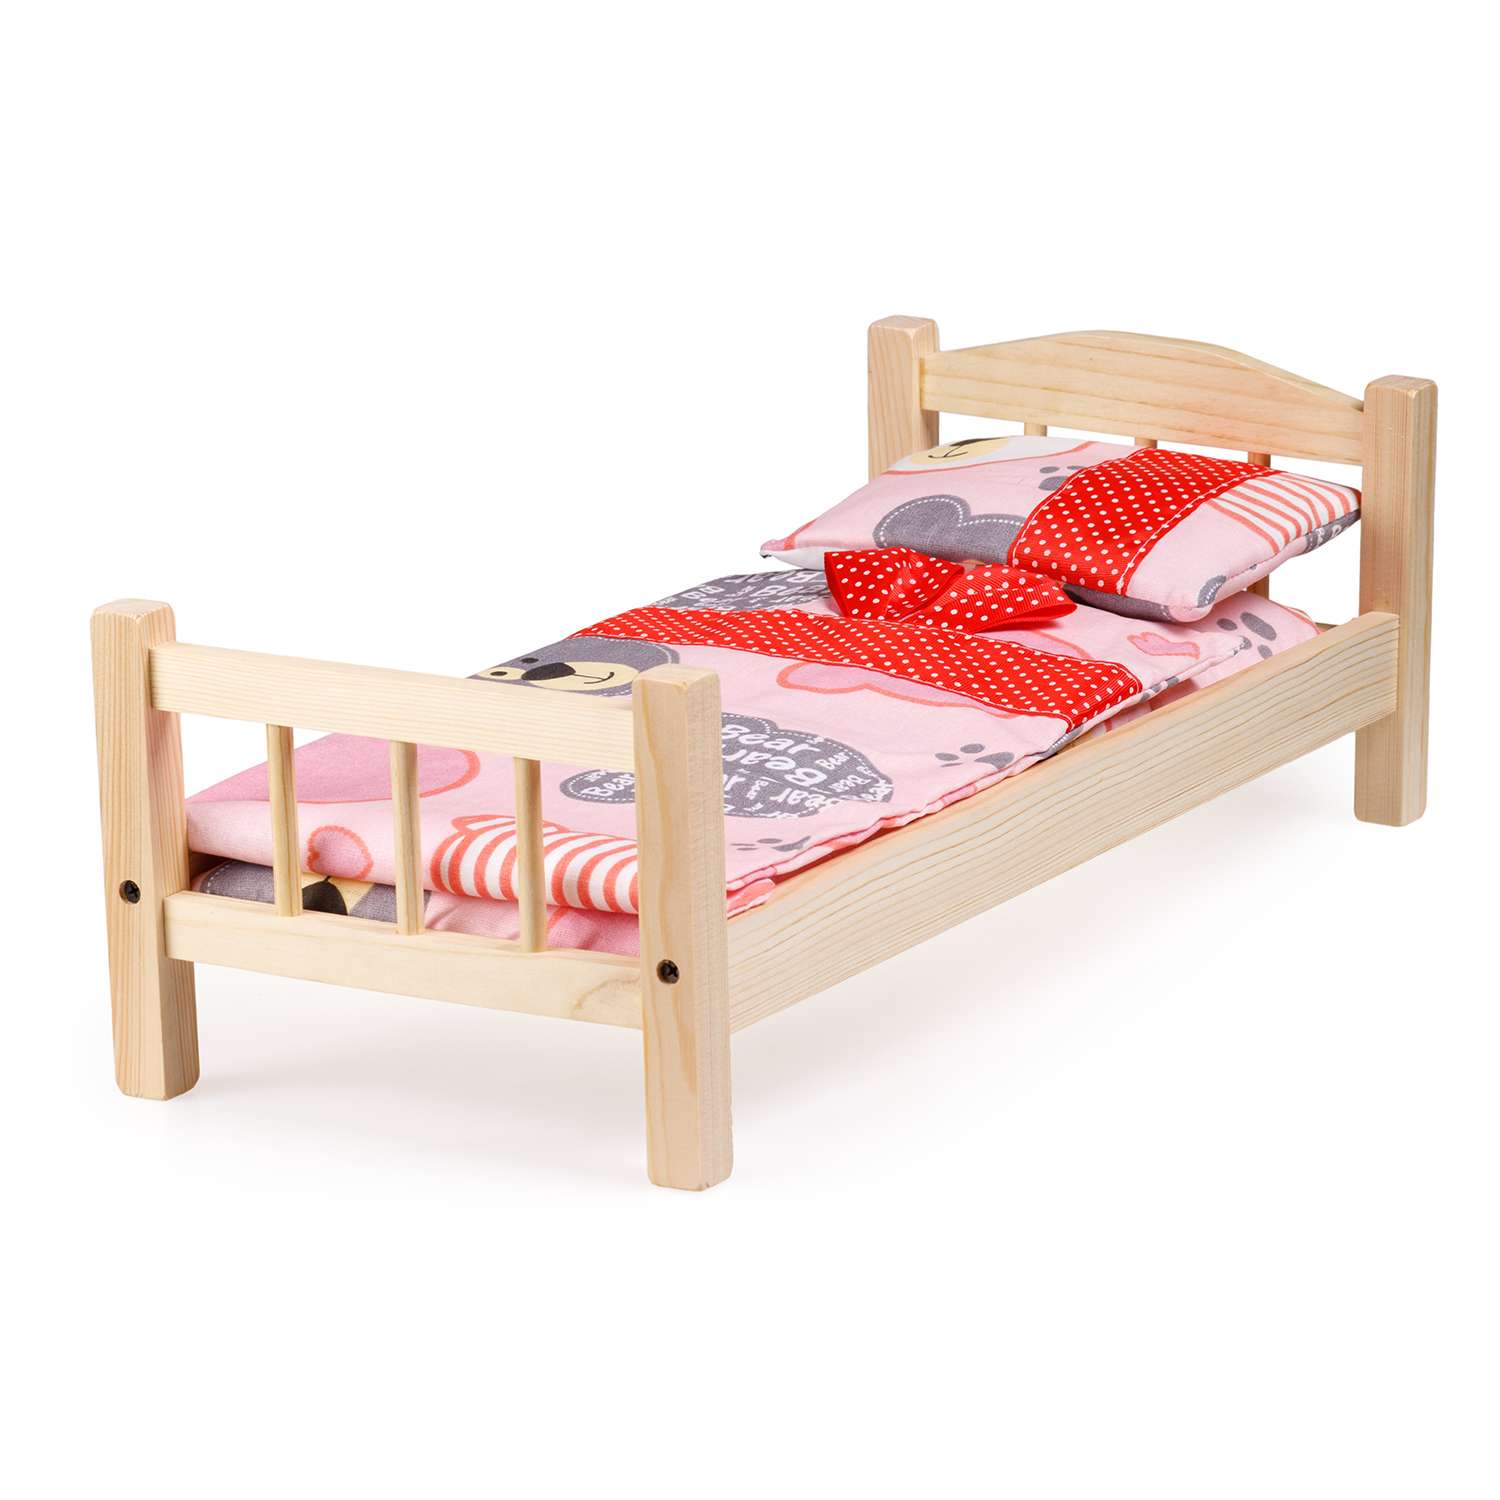 Кроватка для кукол Тутси с двумя спинками светлая деревянная 1-307-2021 - фото 1